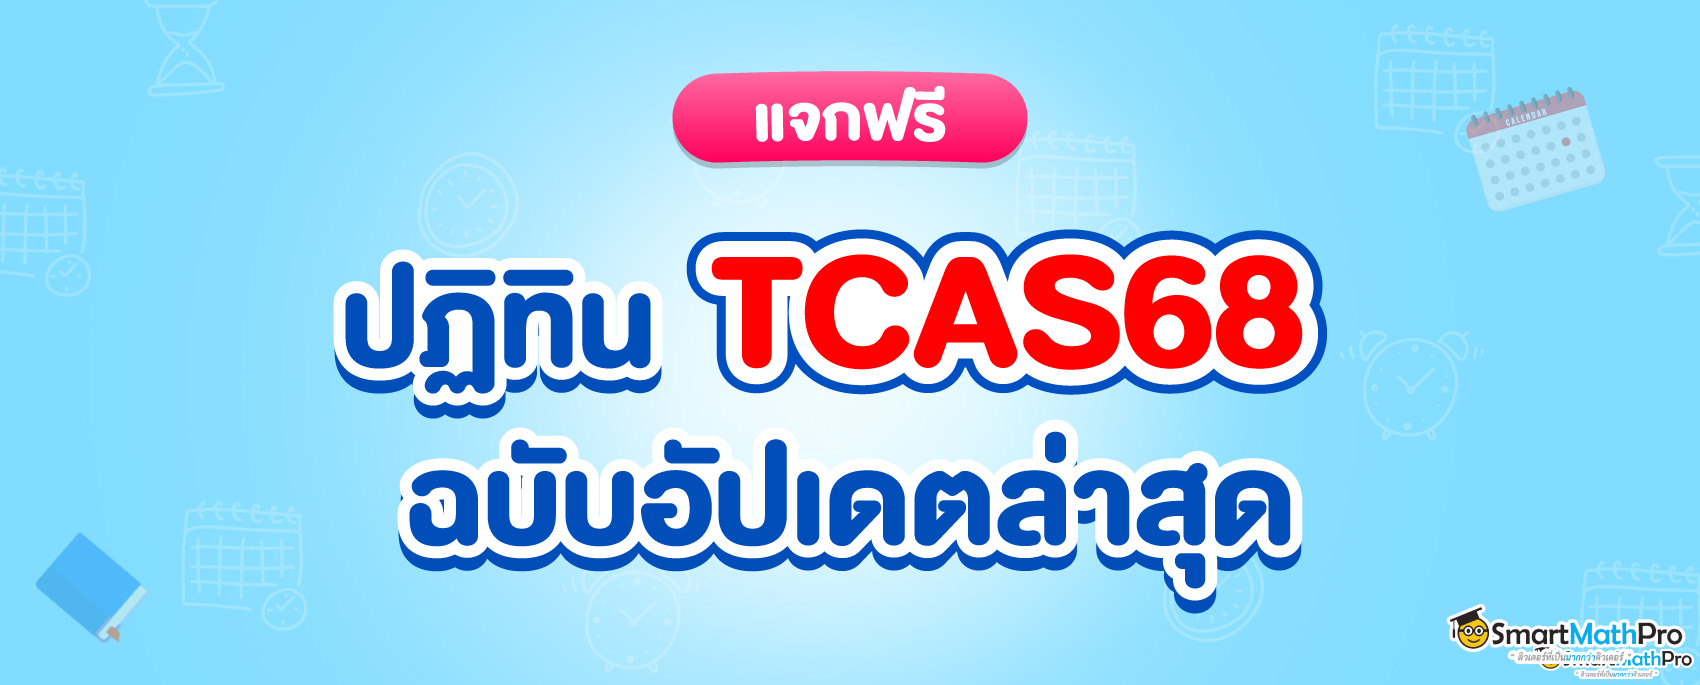 กำหนดการ TCAS68